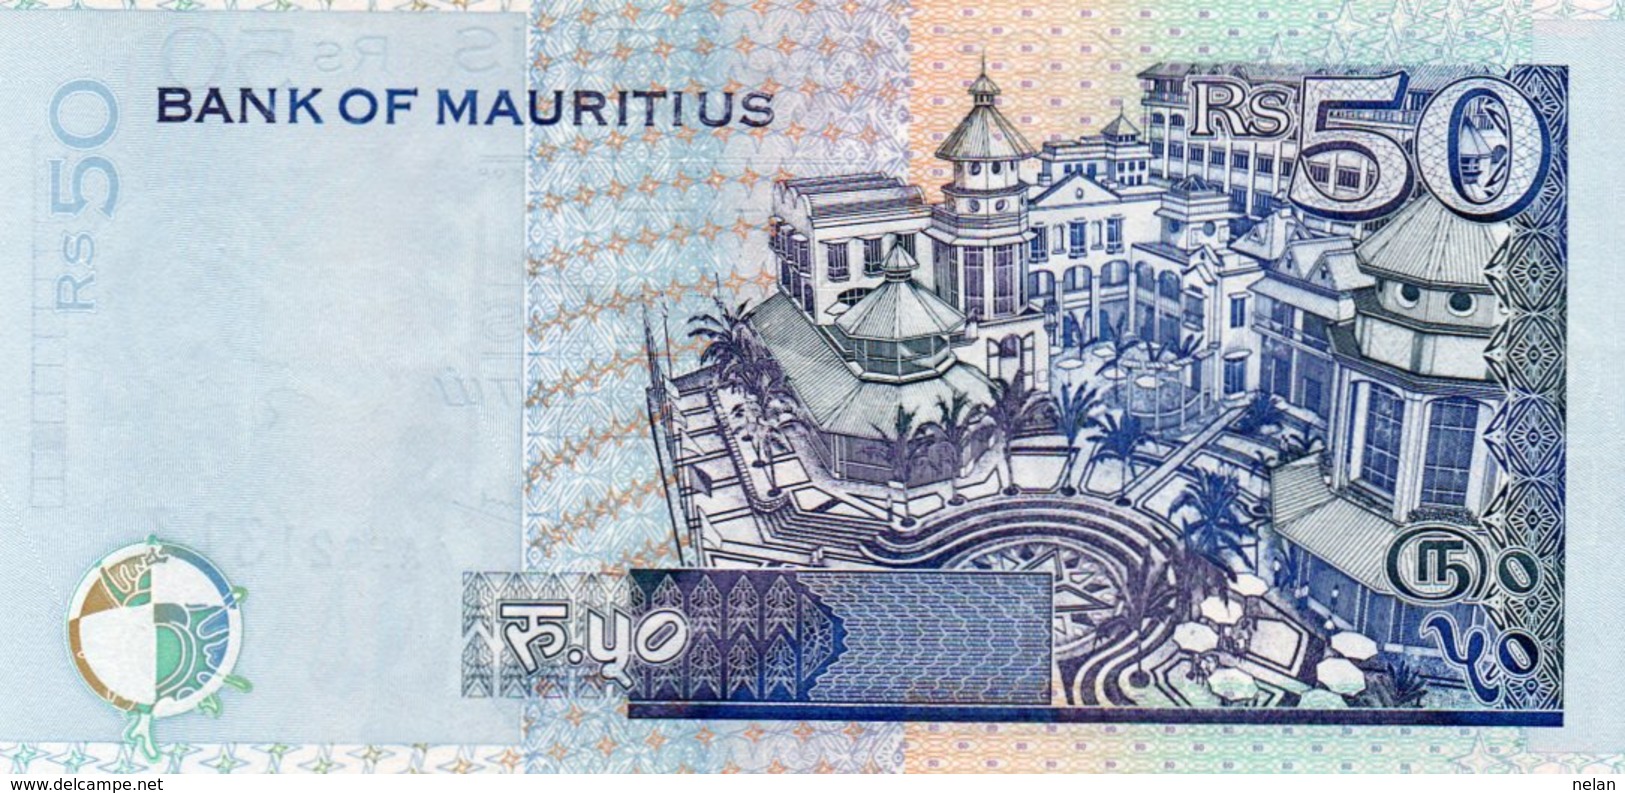 MAURITIUS 50 RUPEES  2001 P-50  UNC - Mauricio